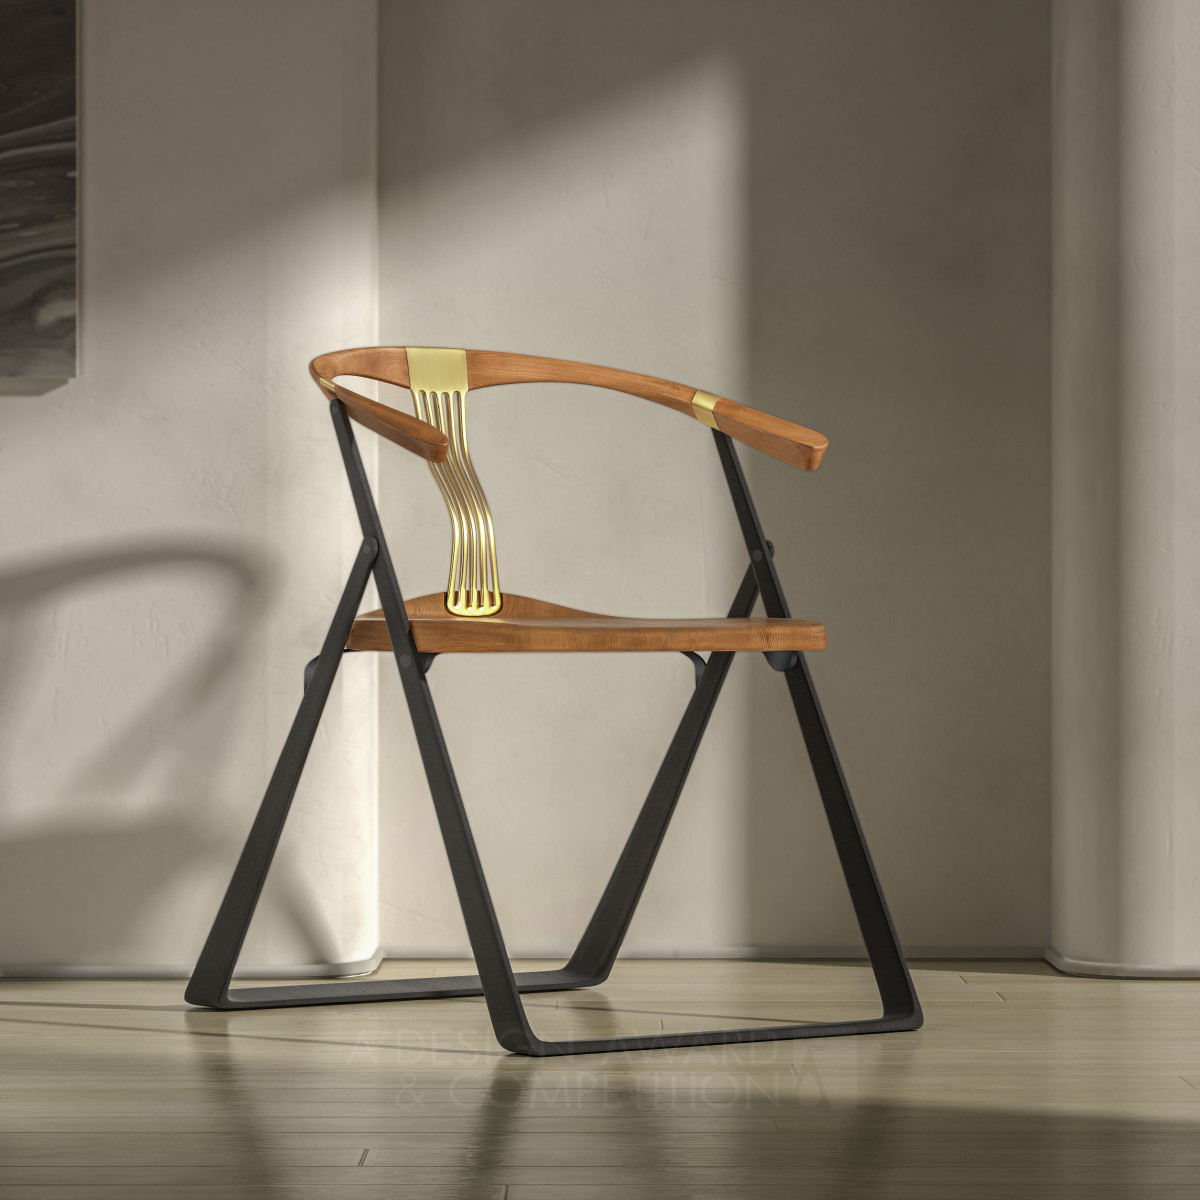 Fusion Folding Chair by Mengke Yuan, Siqi Cai and Longfei Yue Iron Furniture Design Award Winner 2024 